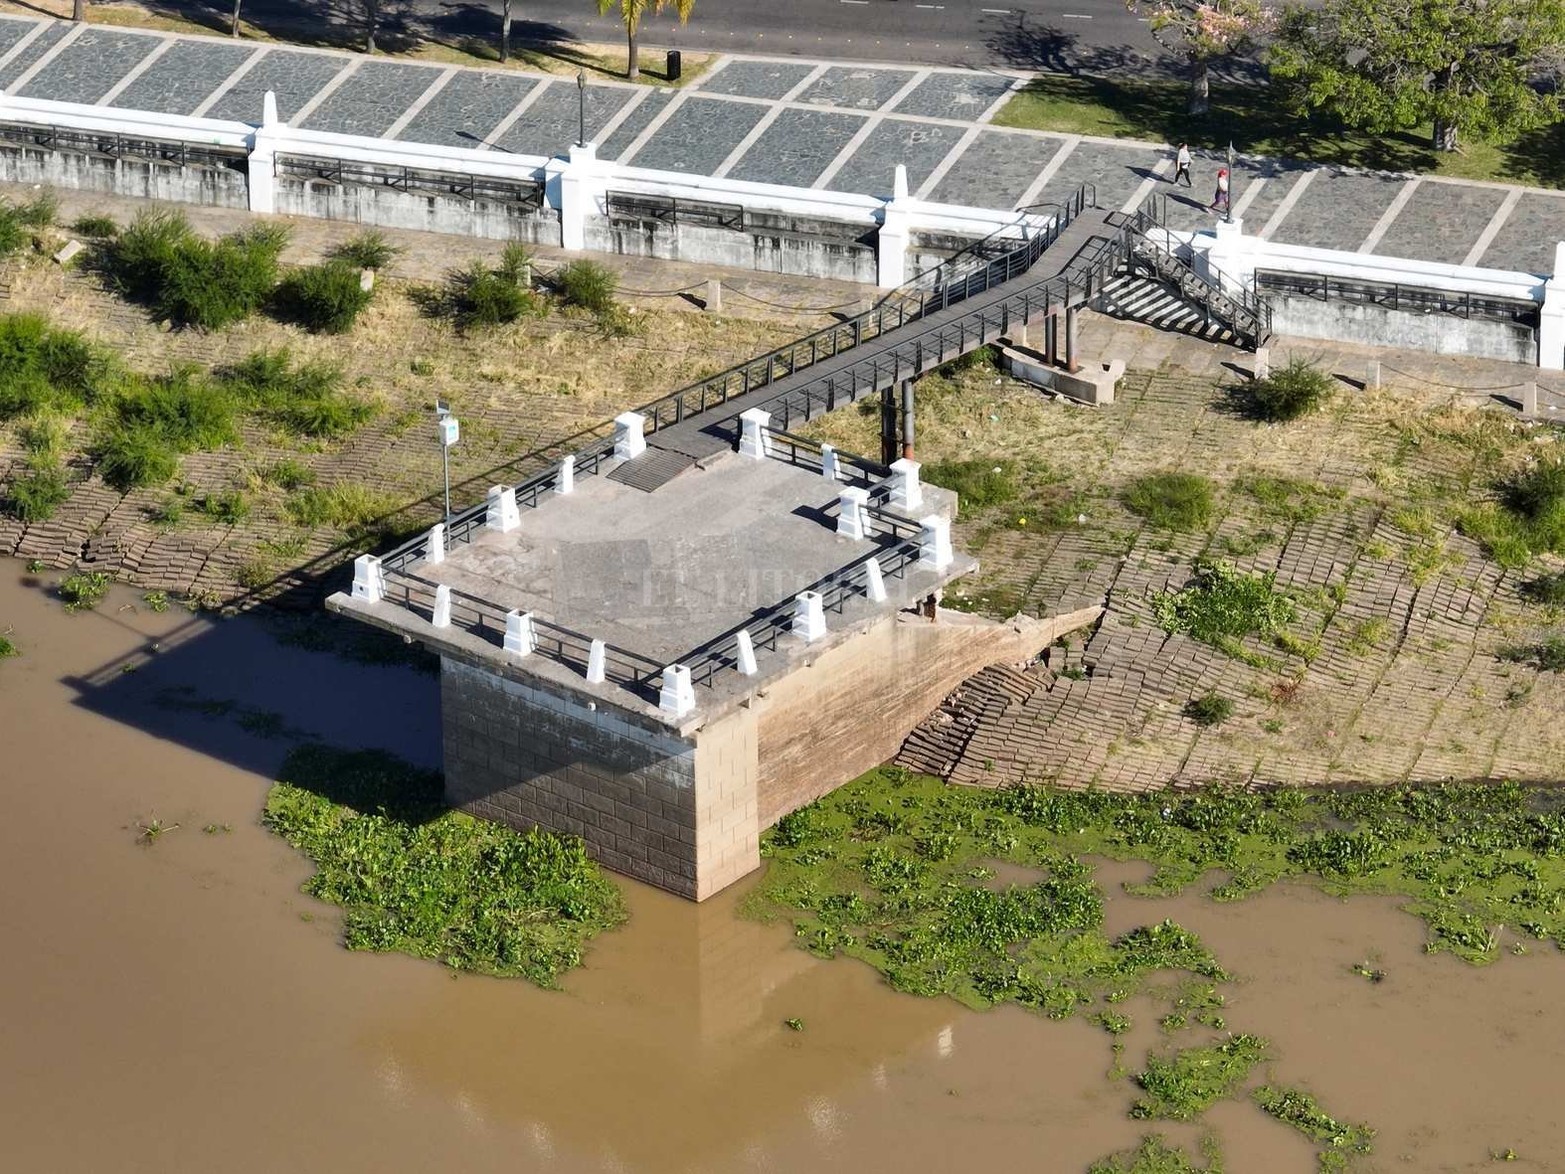 Desde el jueves 14 de abril el rio Paraná subió casi 70 cm. Este martes midió 2,57 metros en el puerto local. El paisaje ribereño cambió respecto al verano. Se cumplen las proyecciones del INA y el nivel se acerca a los 3 metros.